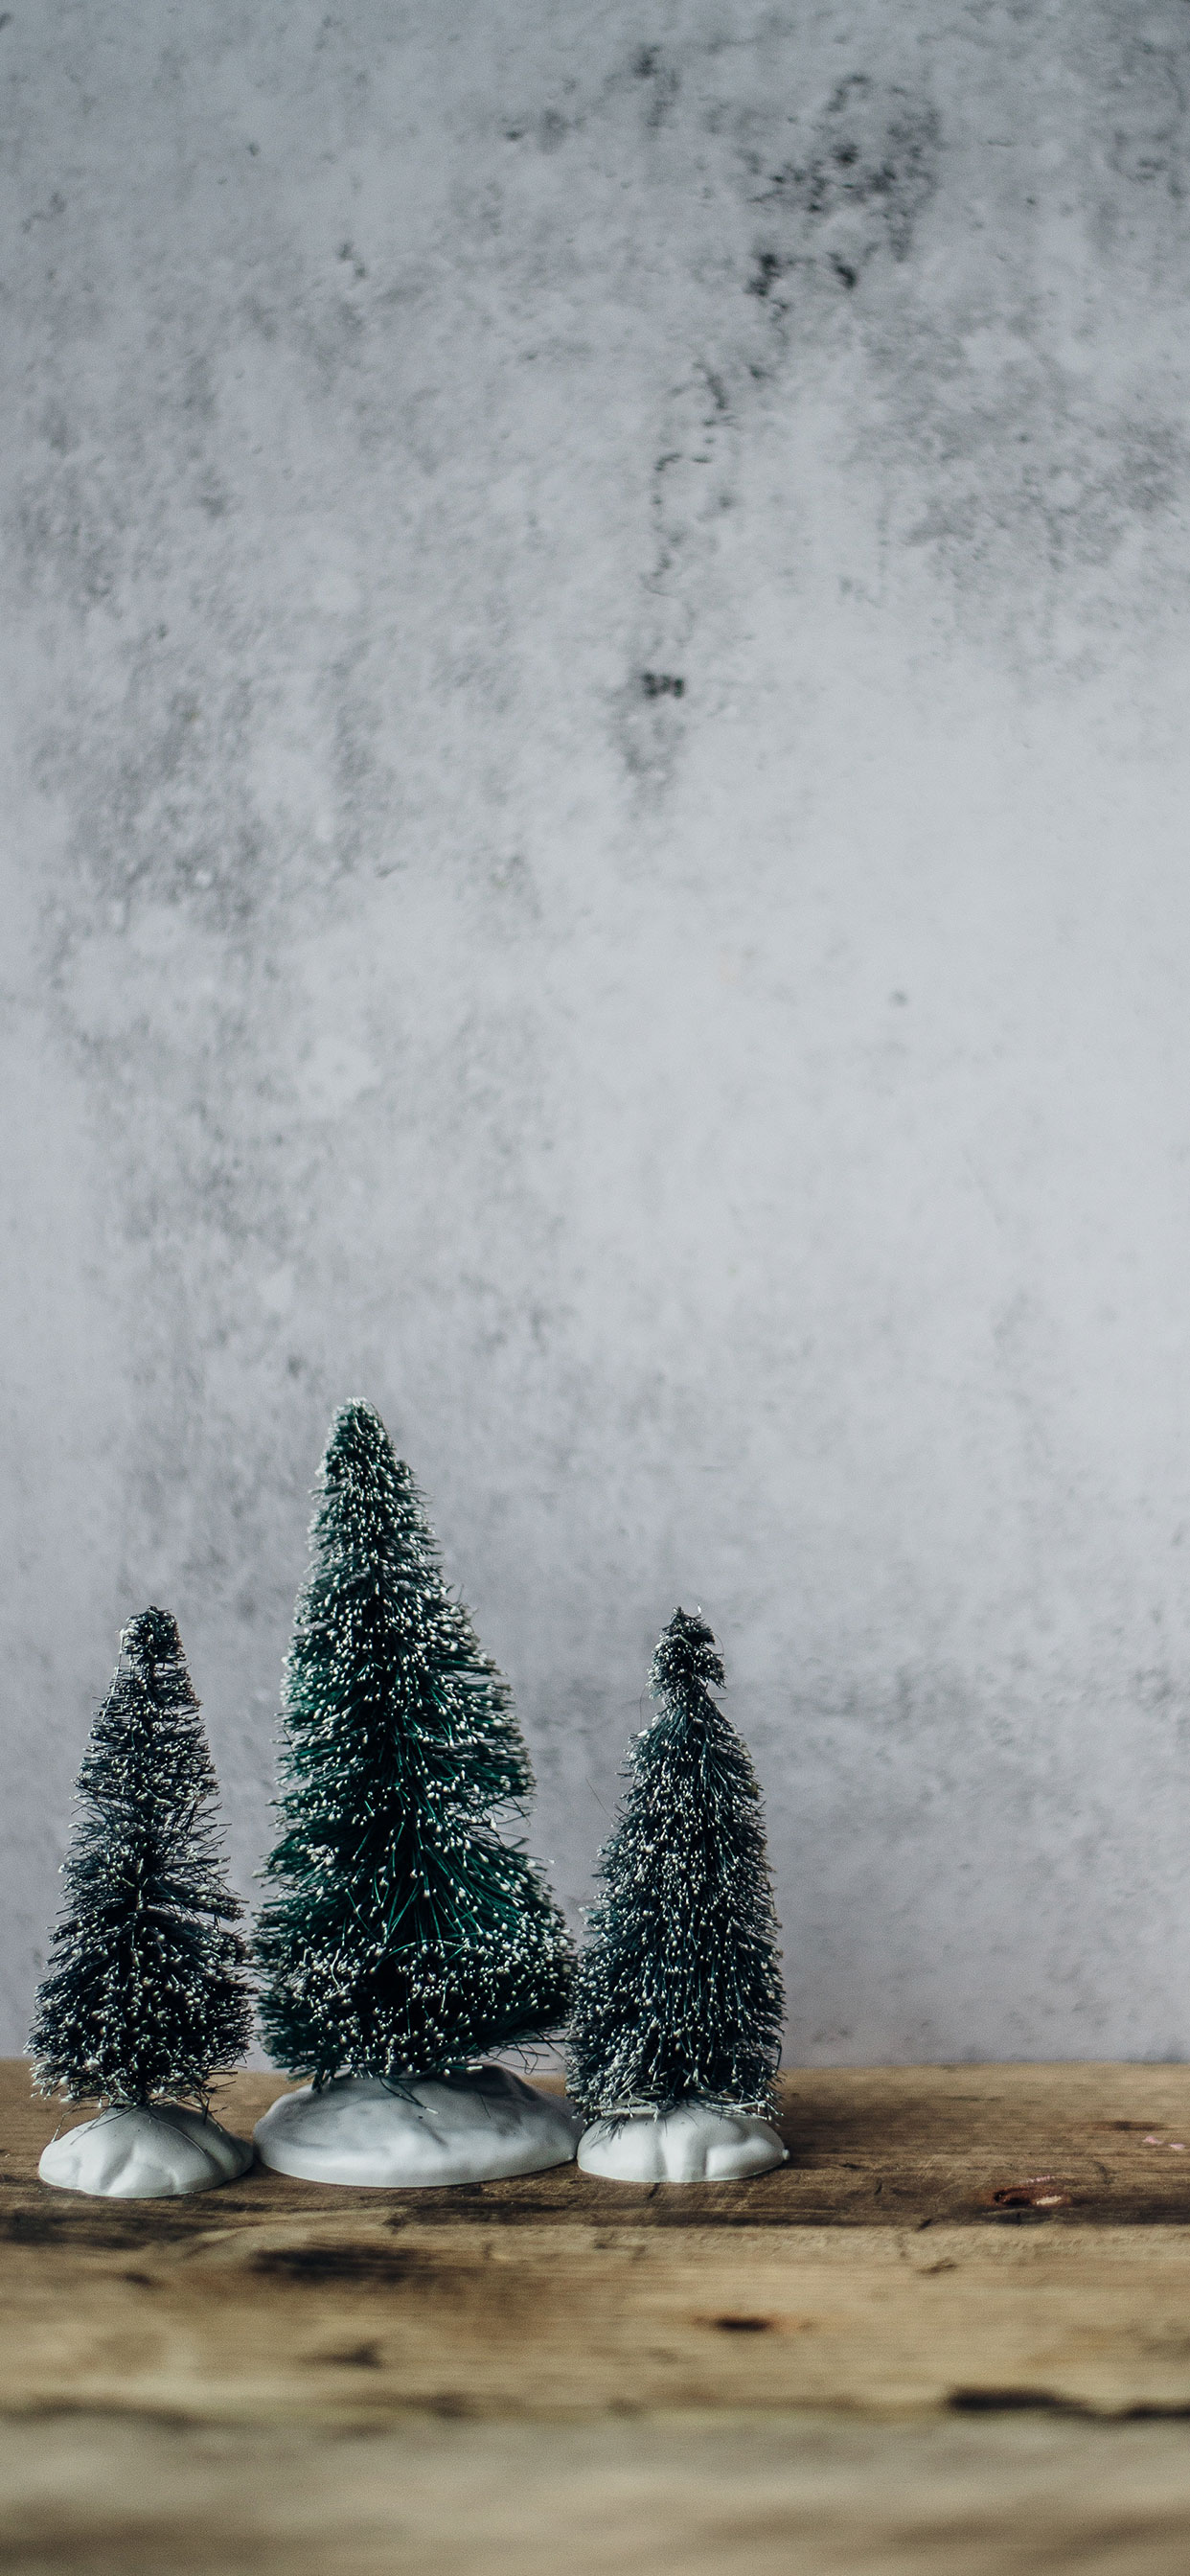 クリスマスの壁紙,木,クリスマスツリー,雪,モミ,凍結